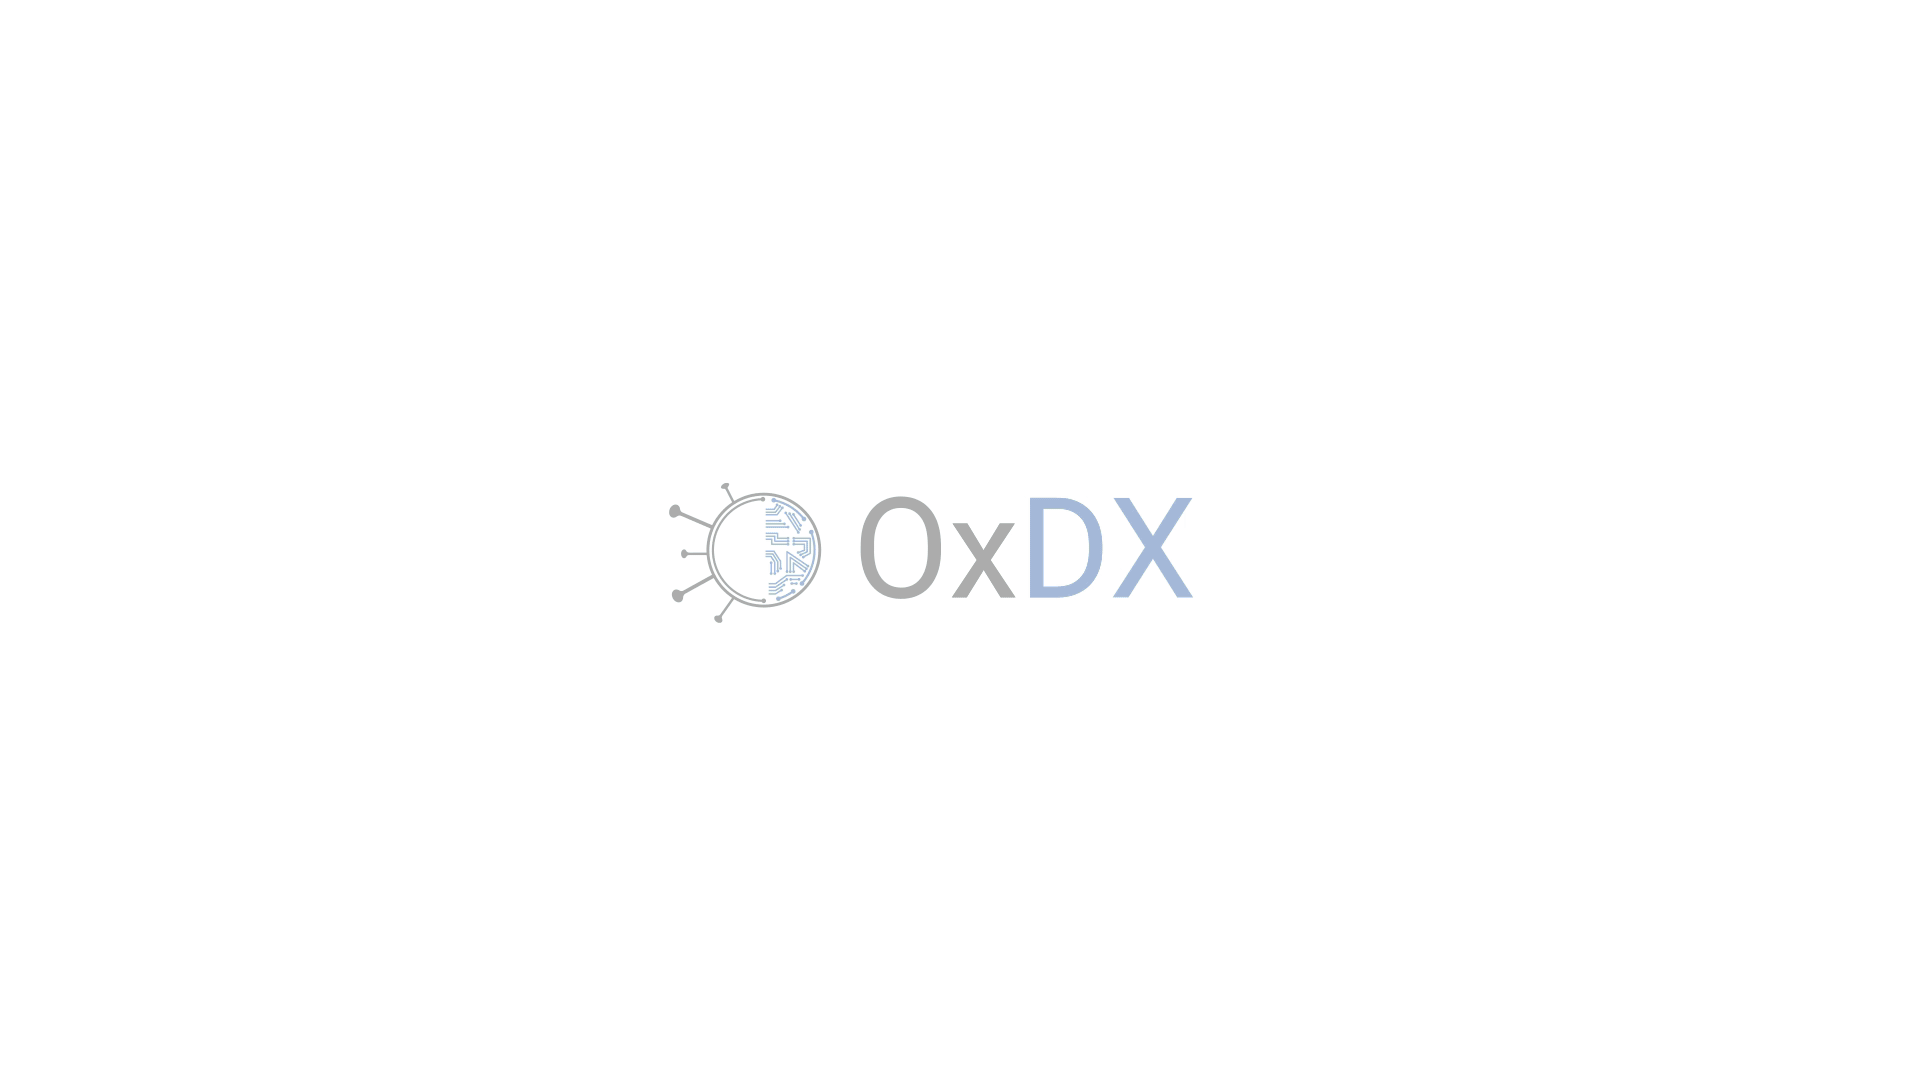 MedTech company OxDX announces rebrand to Pictura Bio